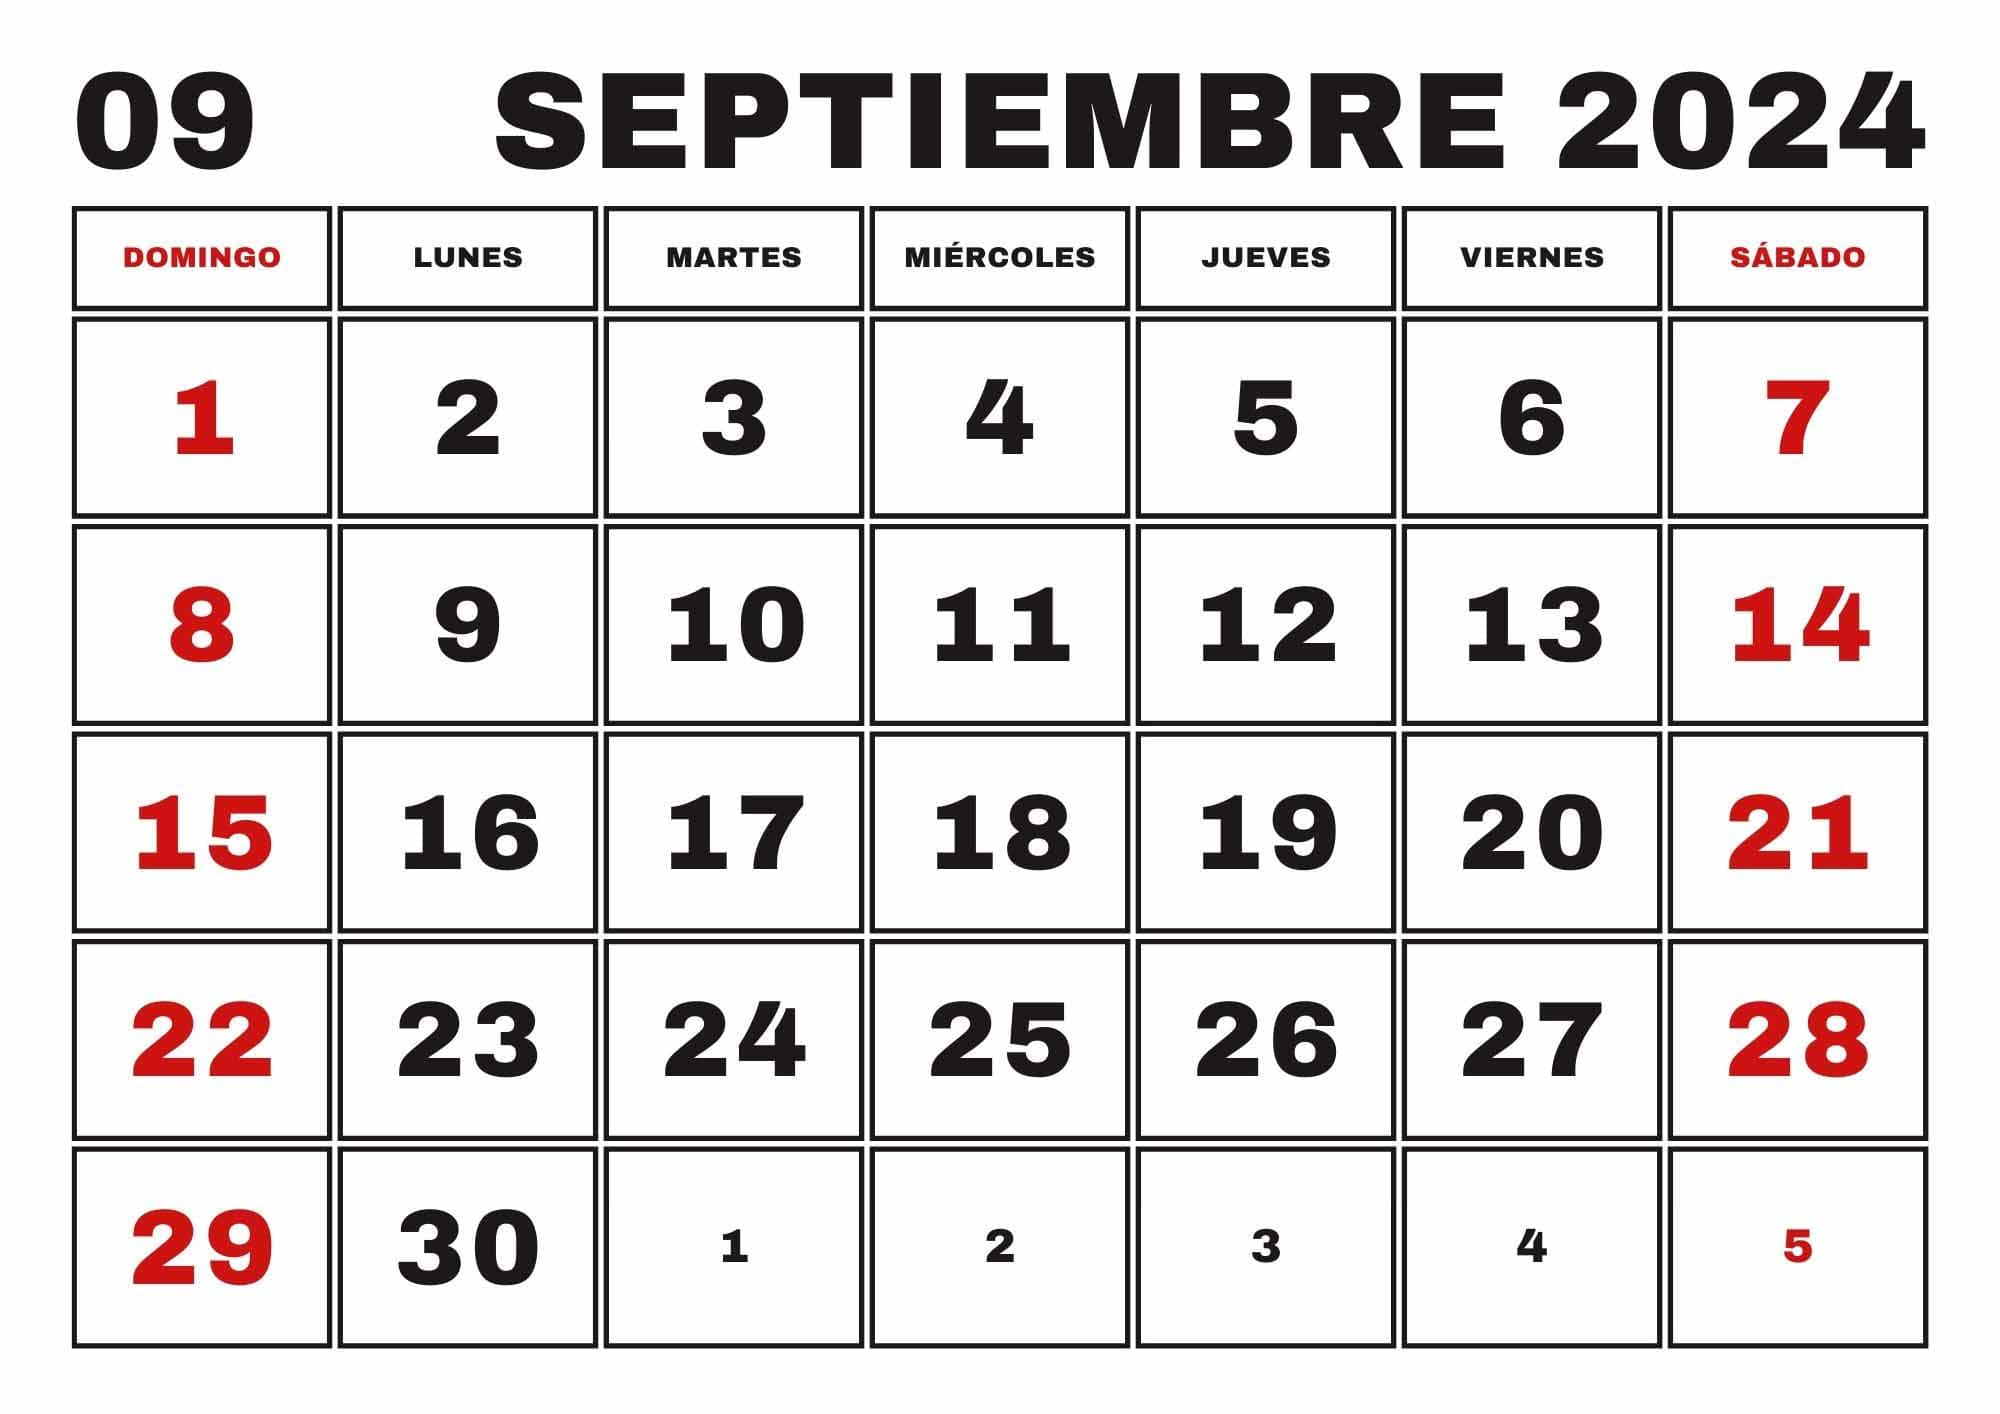 Calendario Septiembre 2024, Obtenga aquí el Calendario Septiembre 2024